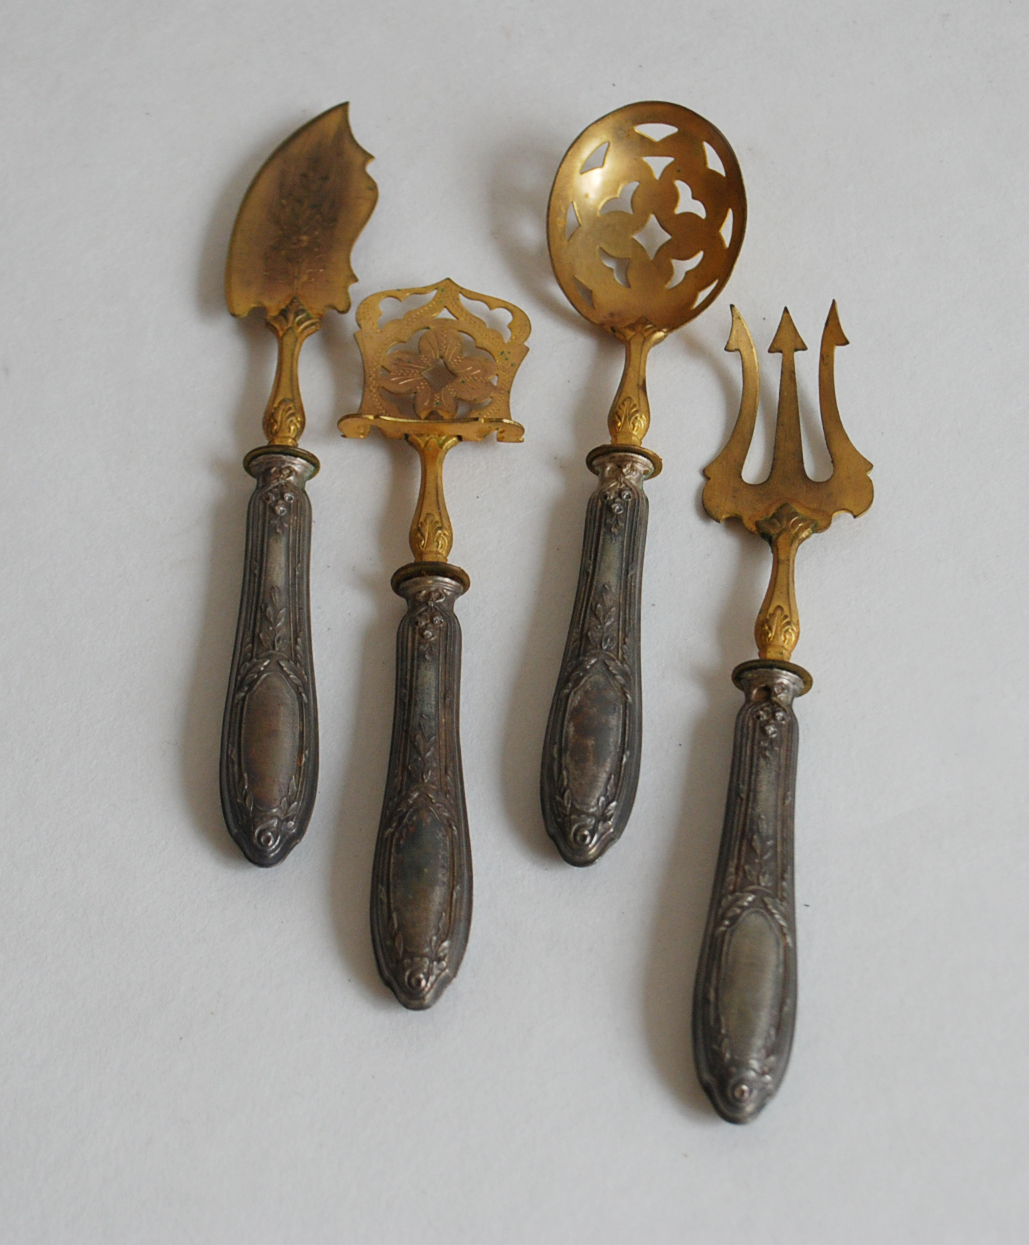 Service à bonbons en argent fourré et métal doré, décor de style Louis XVI. Poinçon Minerve.